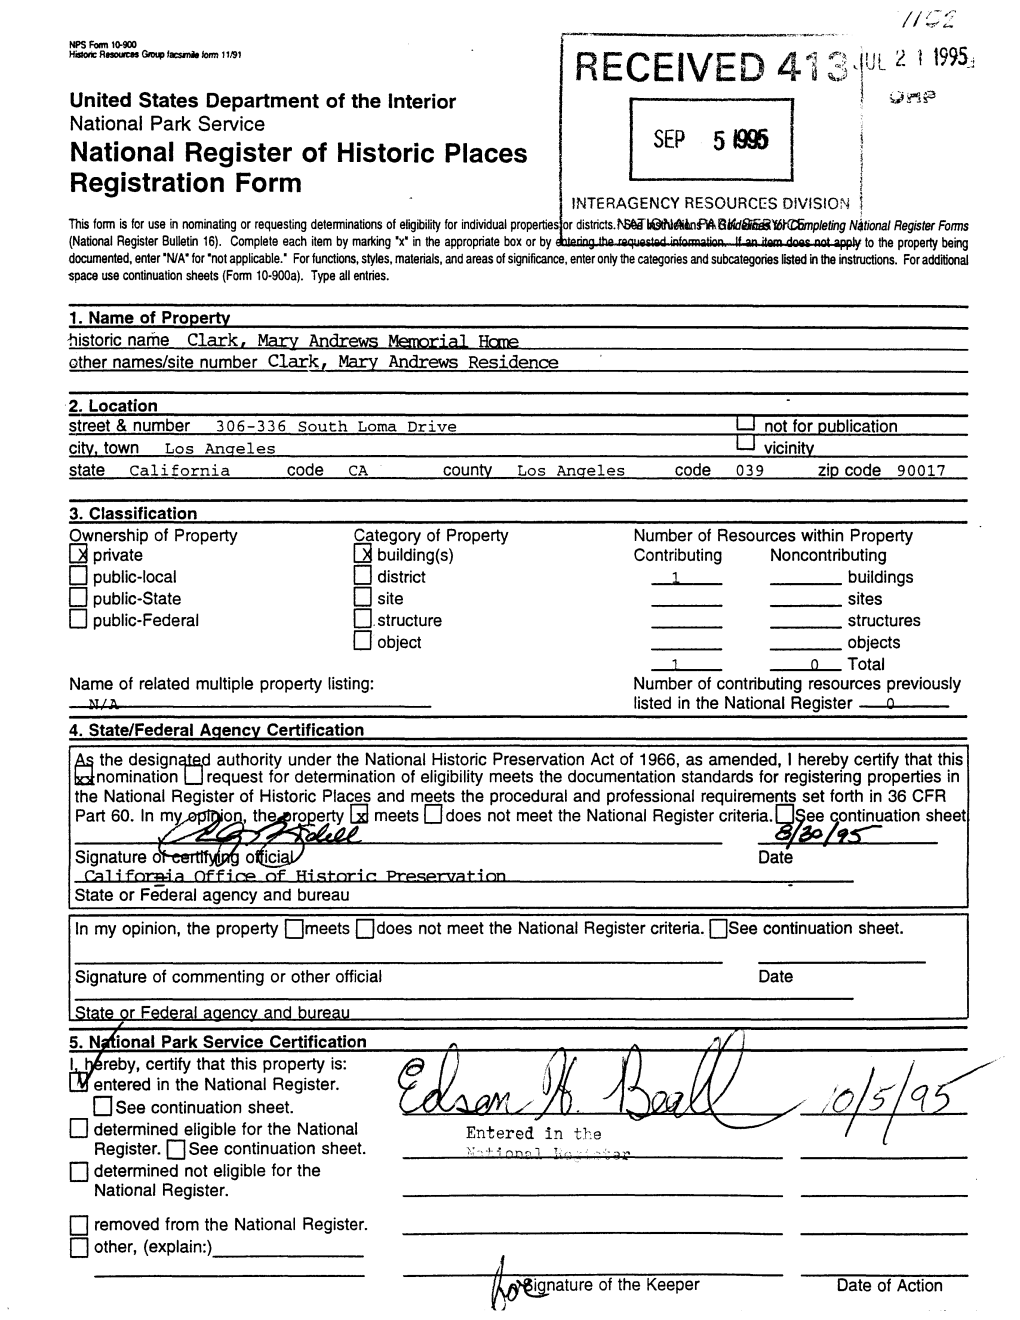 National Register of Historic Places Registration Form 1 D